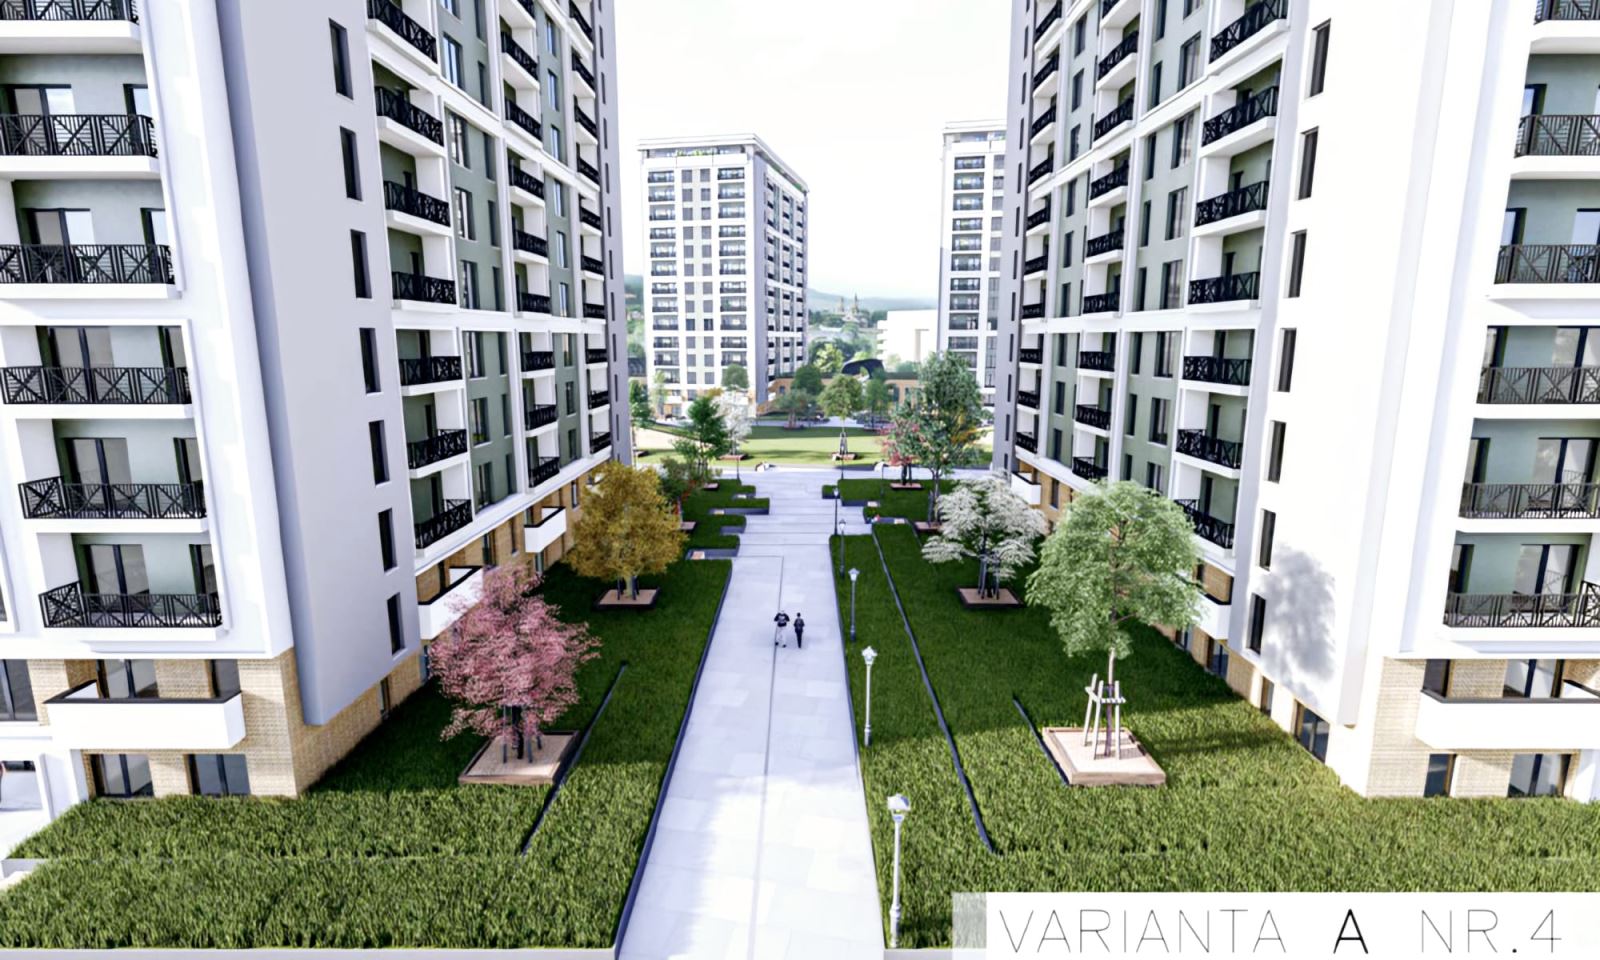 A fost aprobat un nou Complex imobiliar in Iasi, 1800 Apartamente Moderne cu 1, 2 si 3 camere in zona Cicoarei